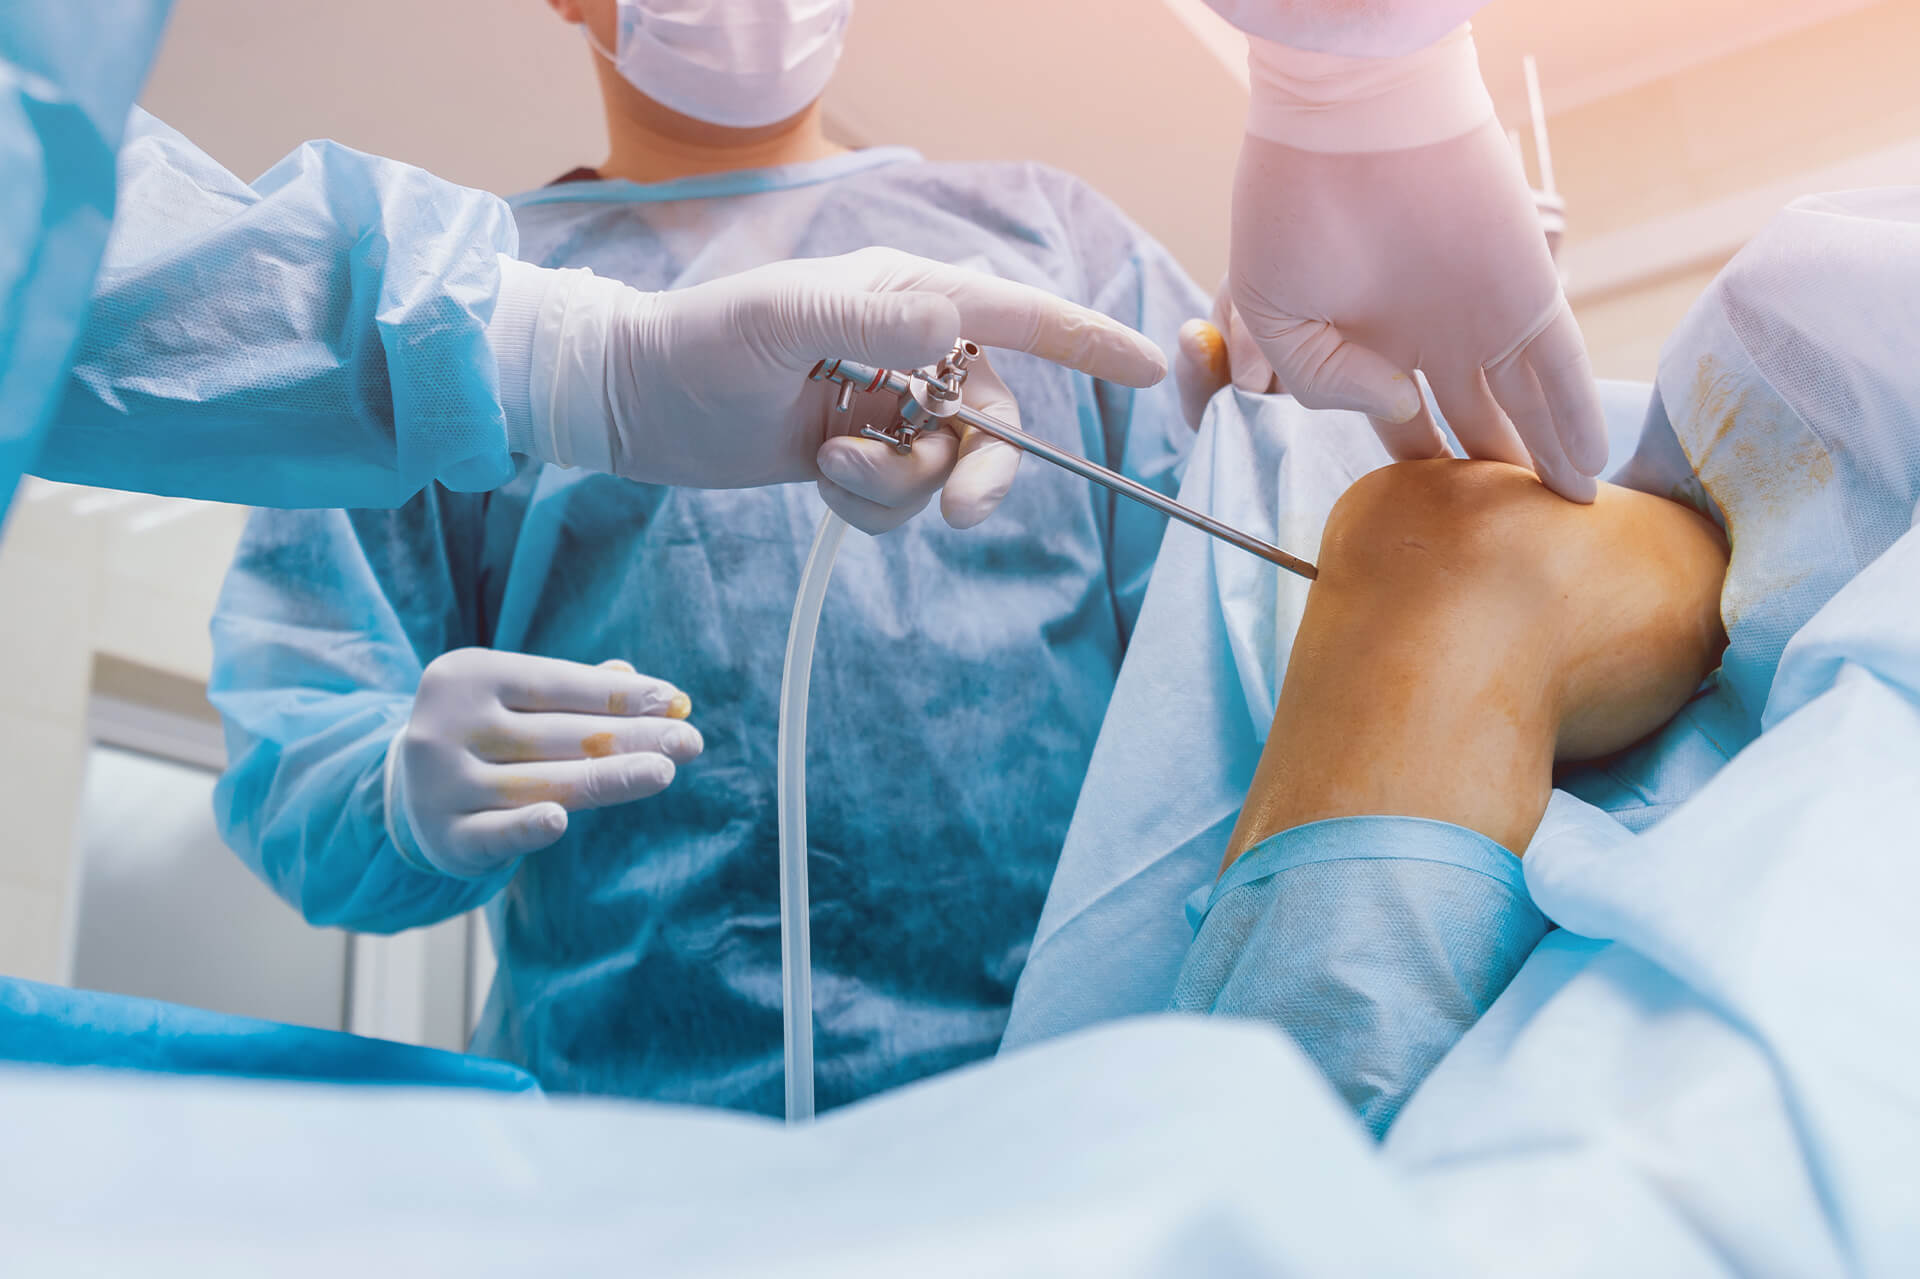 Auf diesem Bild sieht man eine Operation, die das Kreuzband operiert. Auf dem Bild sieht man zwei Ärzte. Einer der Ärzte hat ein Gerät in der Hand, die ins Knie geht. Dieses Gerät wird wahrscheinlich zum absaugen benutzt. Das Knie ist mit einer Orangenschicht eingecremt.